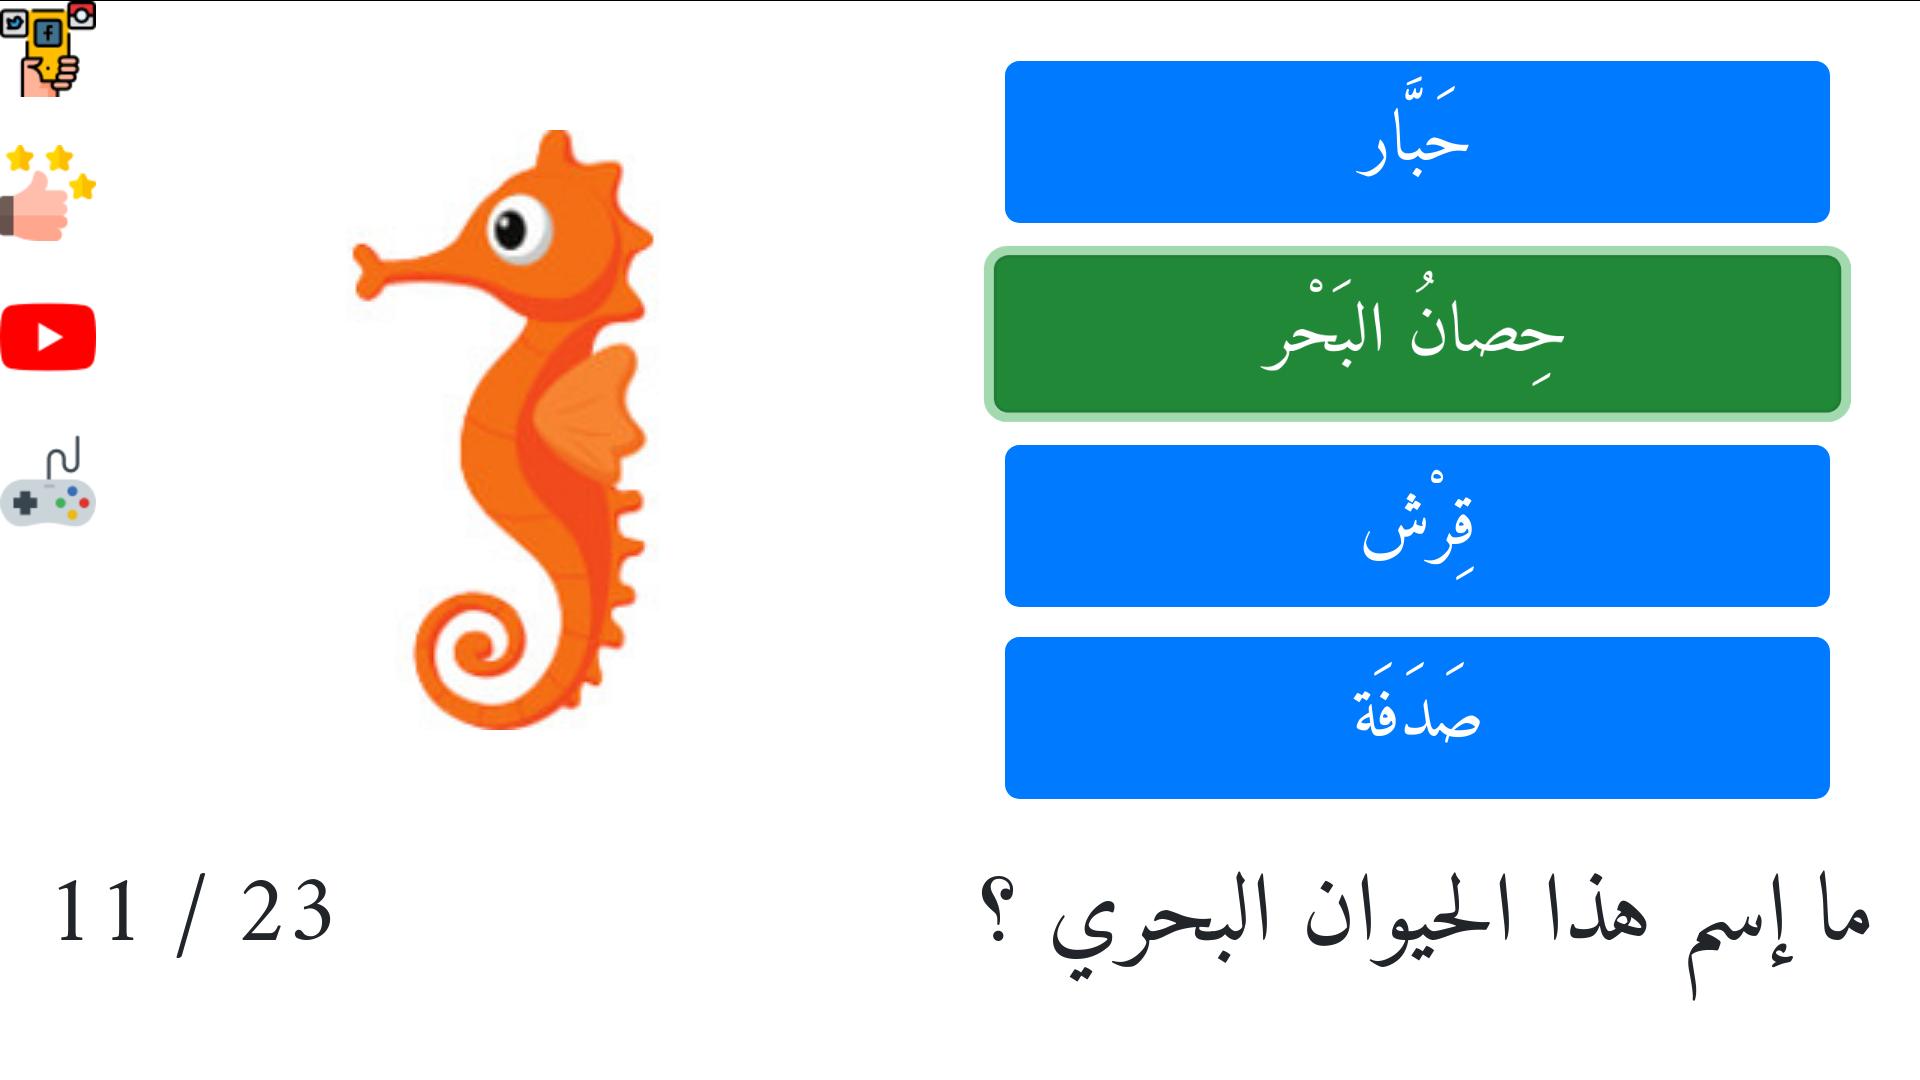 تعليم أسماء الحيوانات البحرية اللغة العربية الفصحى APK voor Android Download